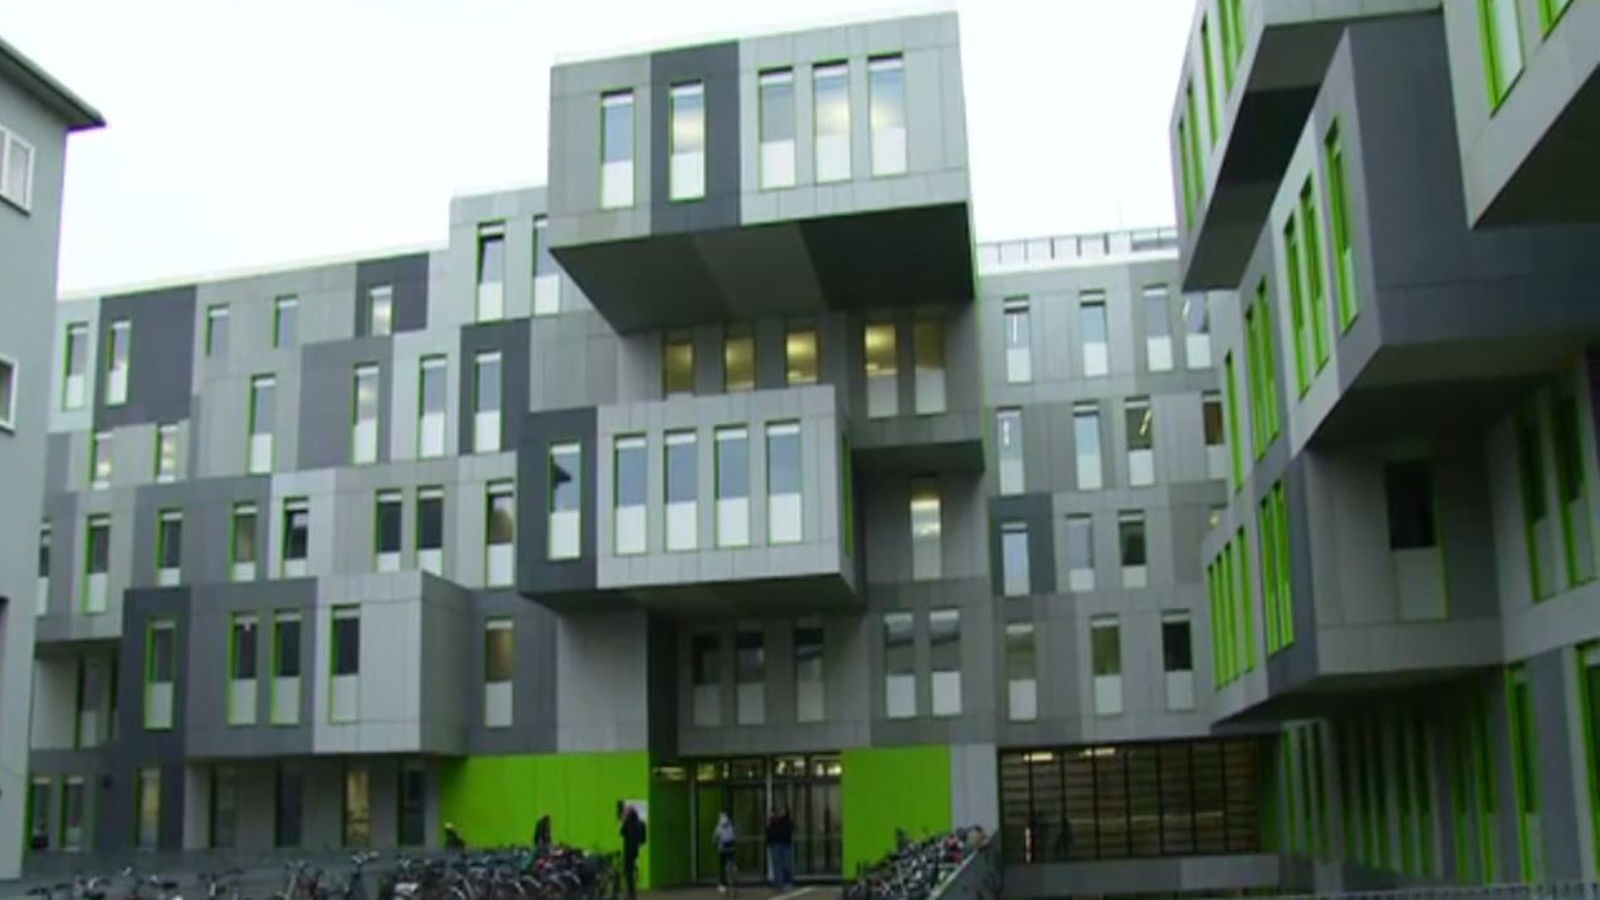 Campusgebäude in Köln muss wieder saniert werden